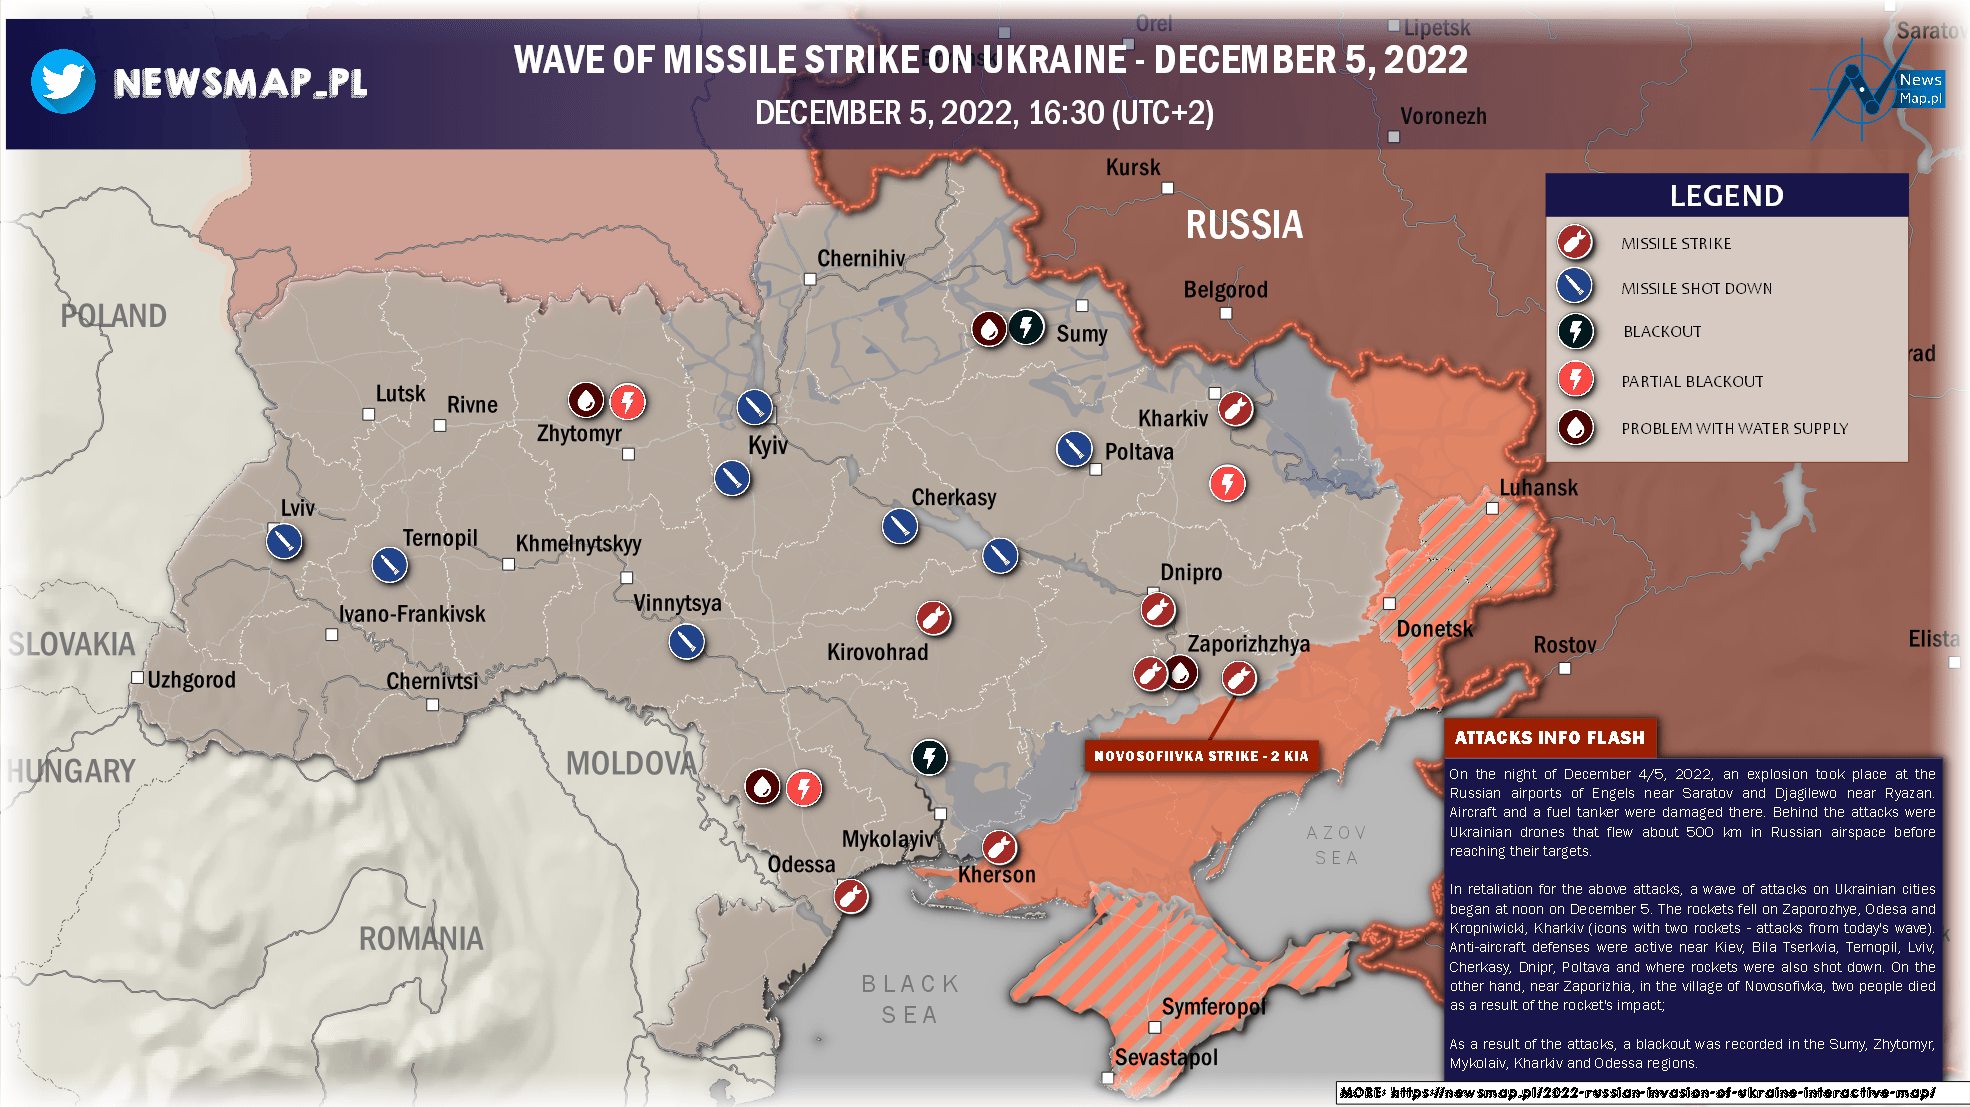 WAVE OF MISSILE STRIKE ON UKRAINE - DECEMBER 5, 2022